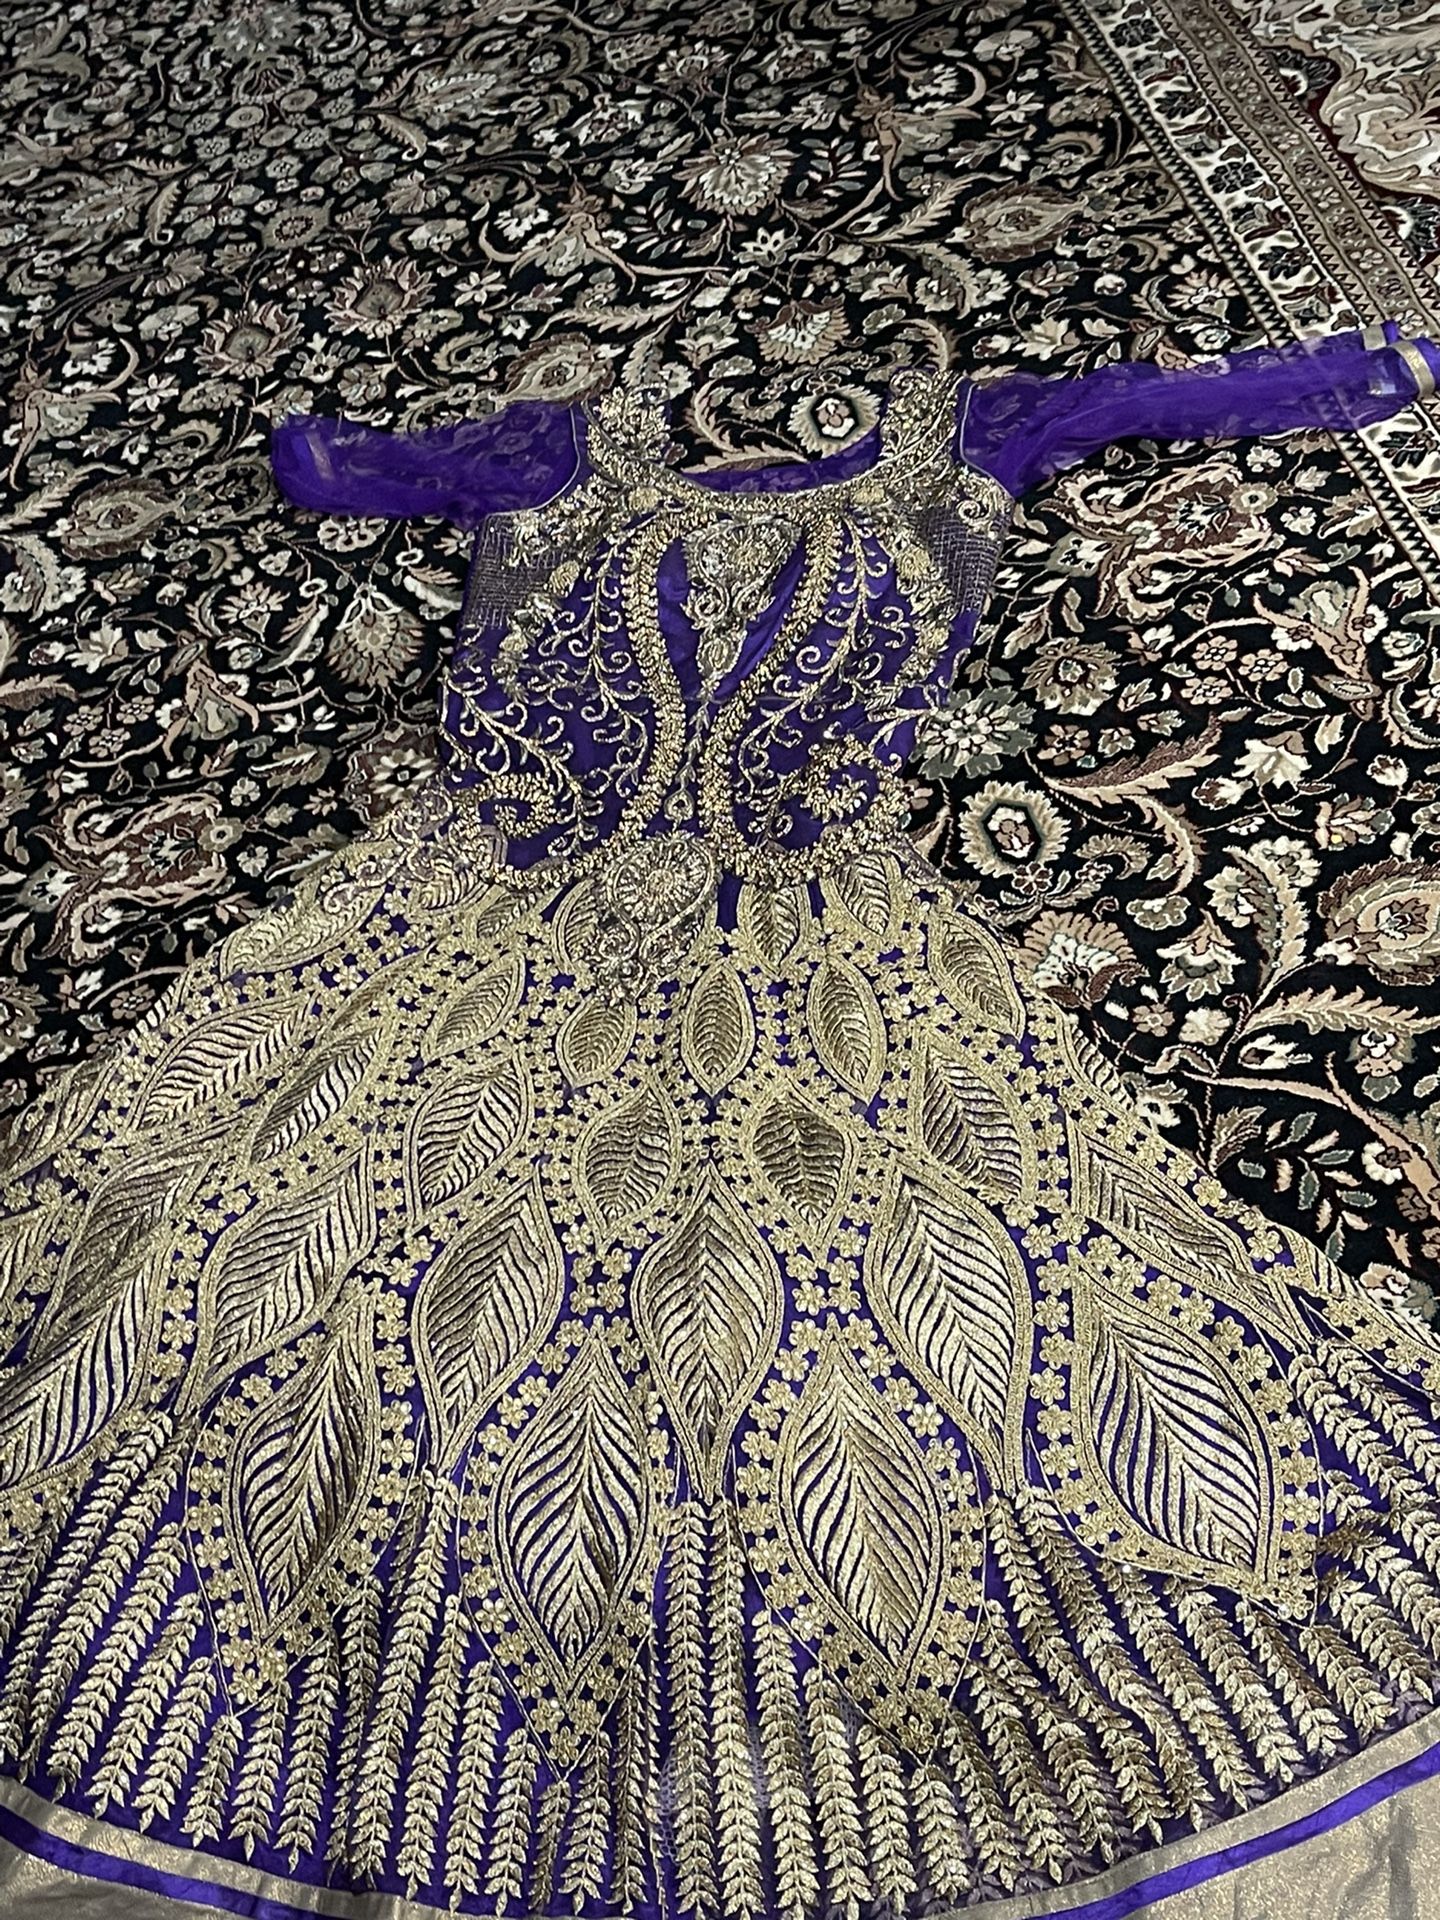 Big Purple Dress